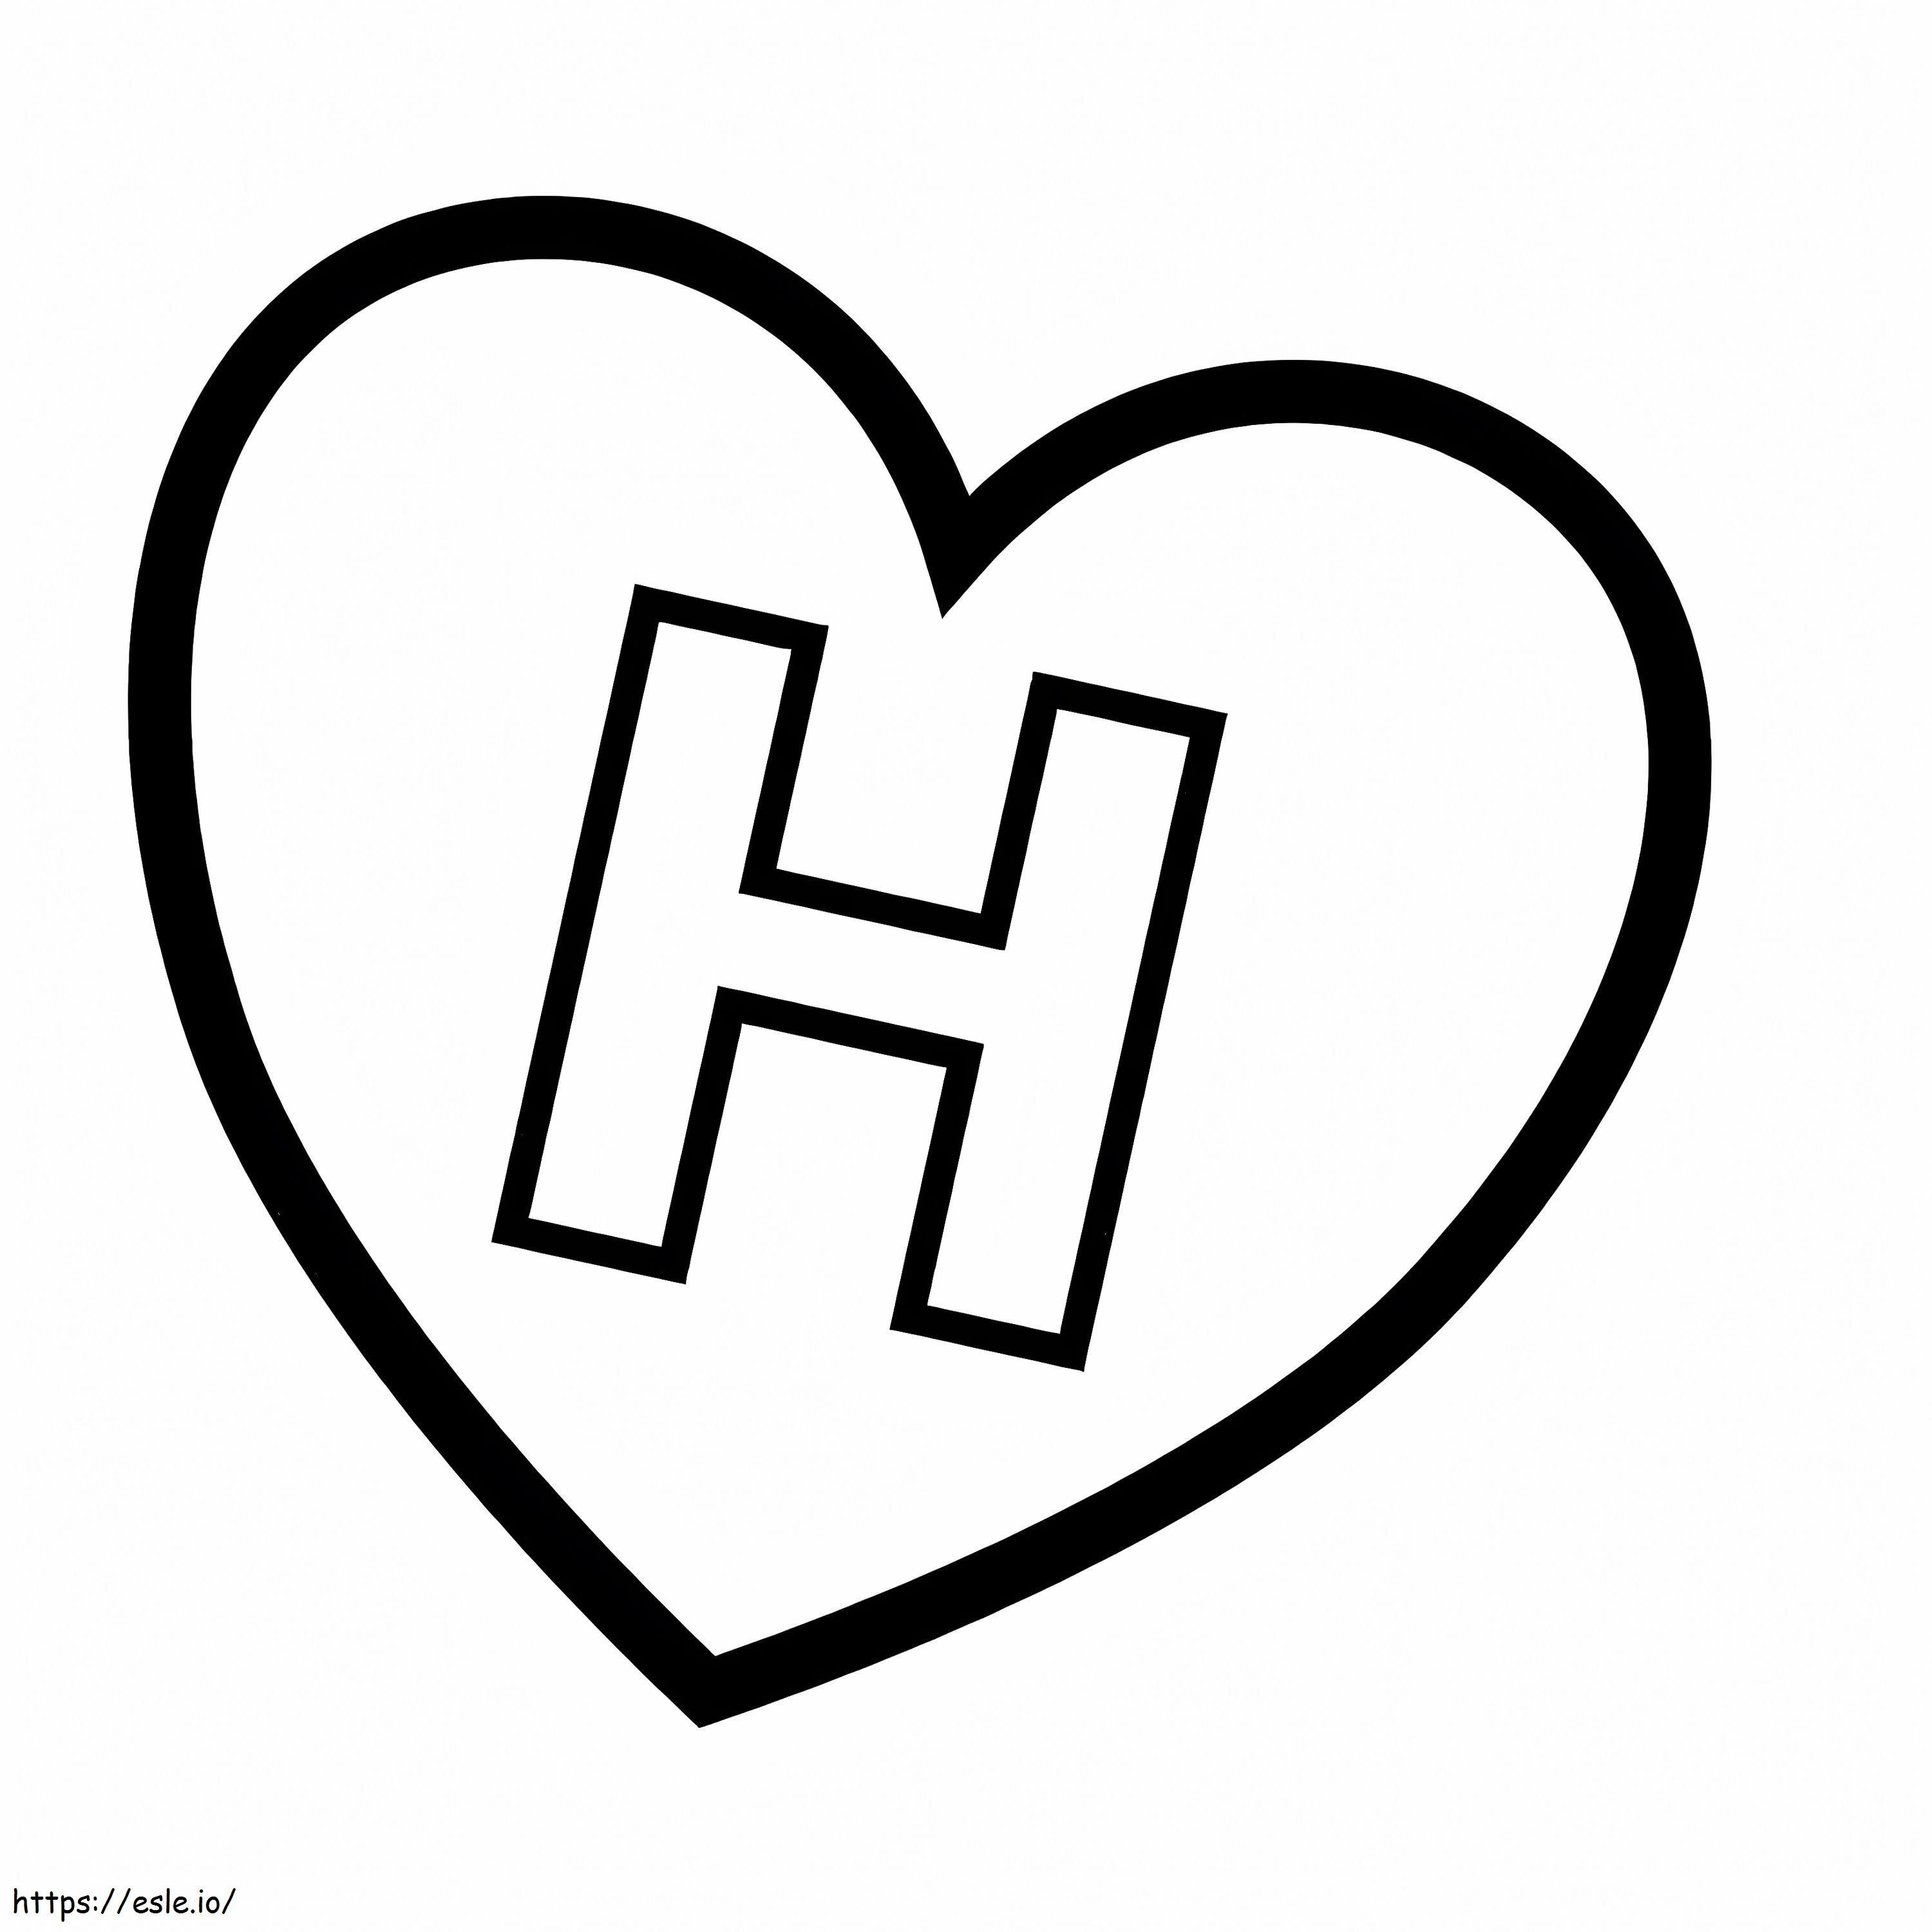 Litera H în inimă de colorat